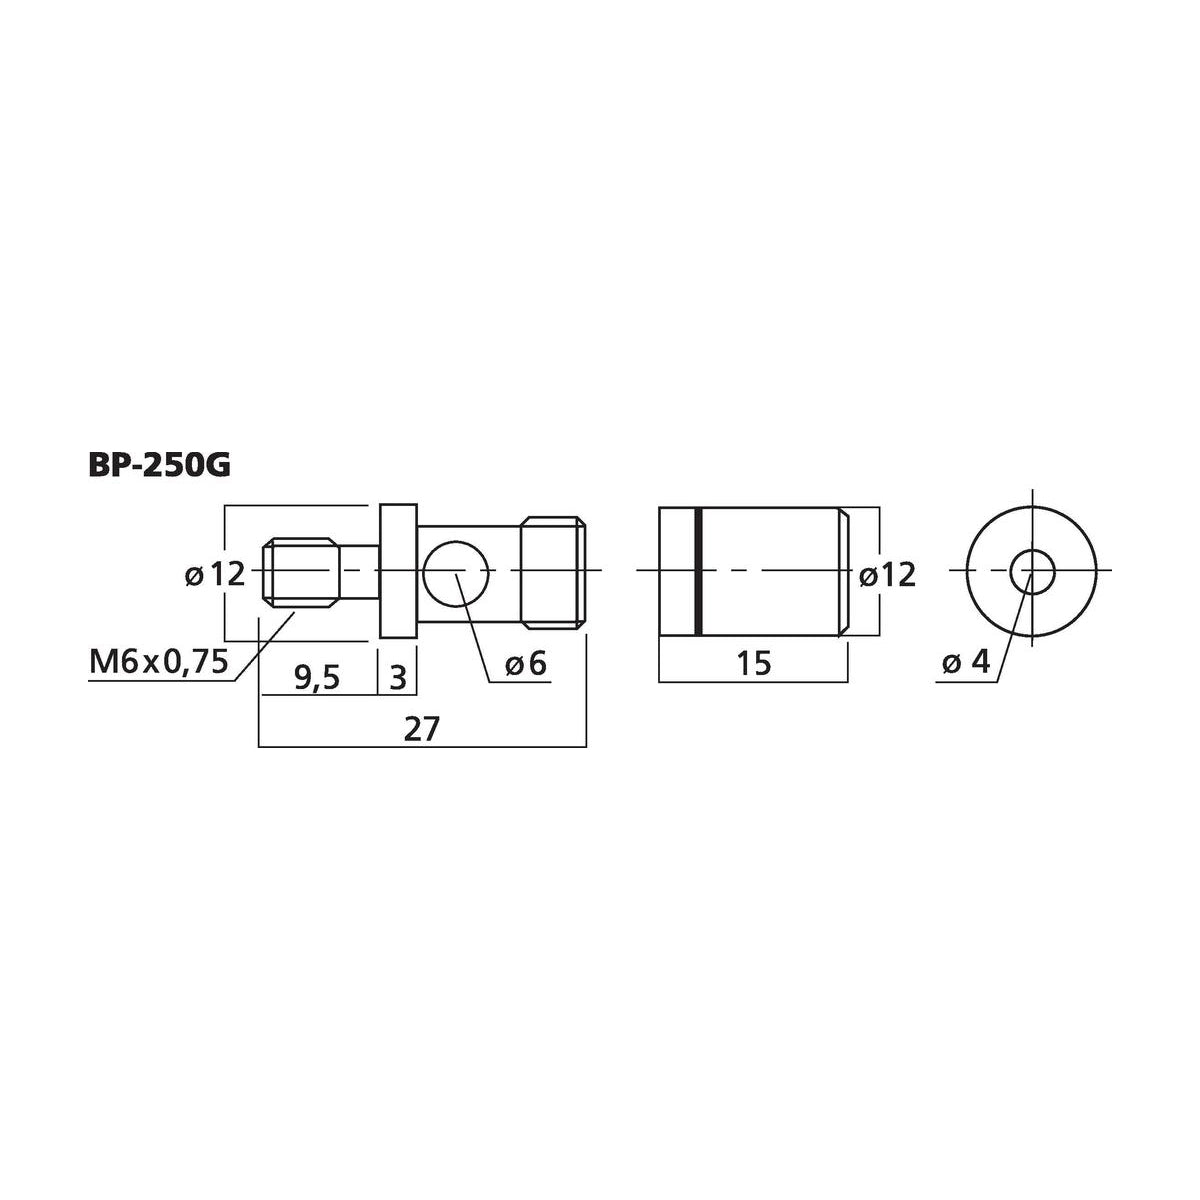 Monaocr BP-250G dimensions.